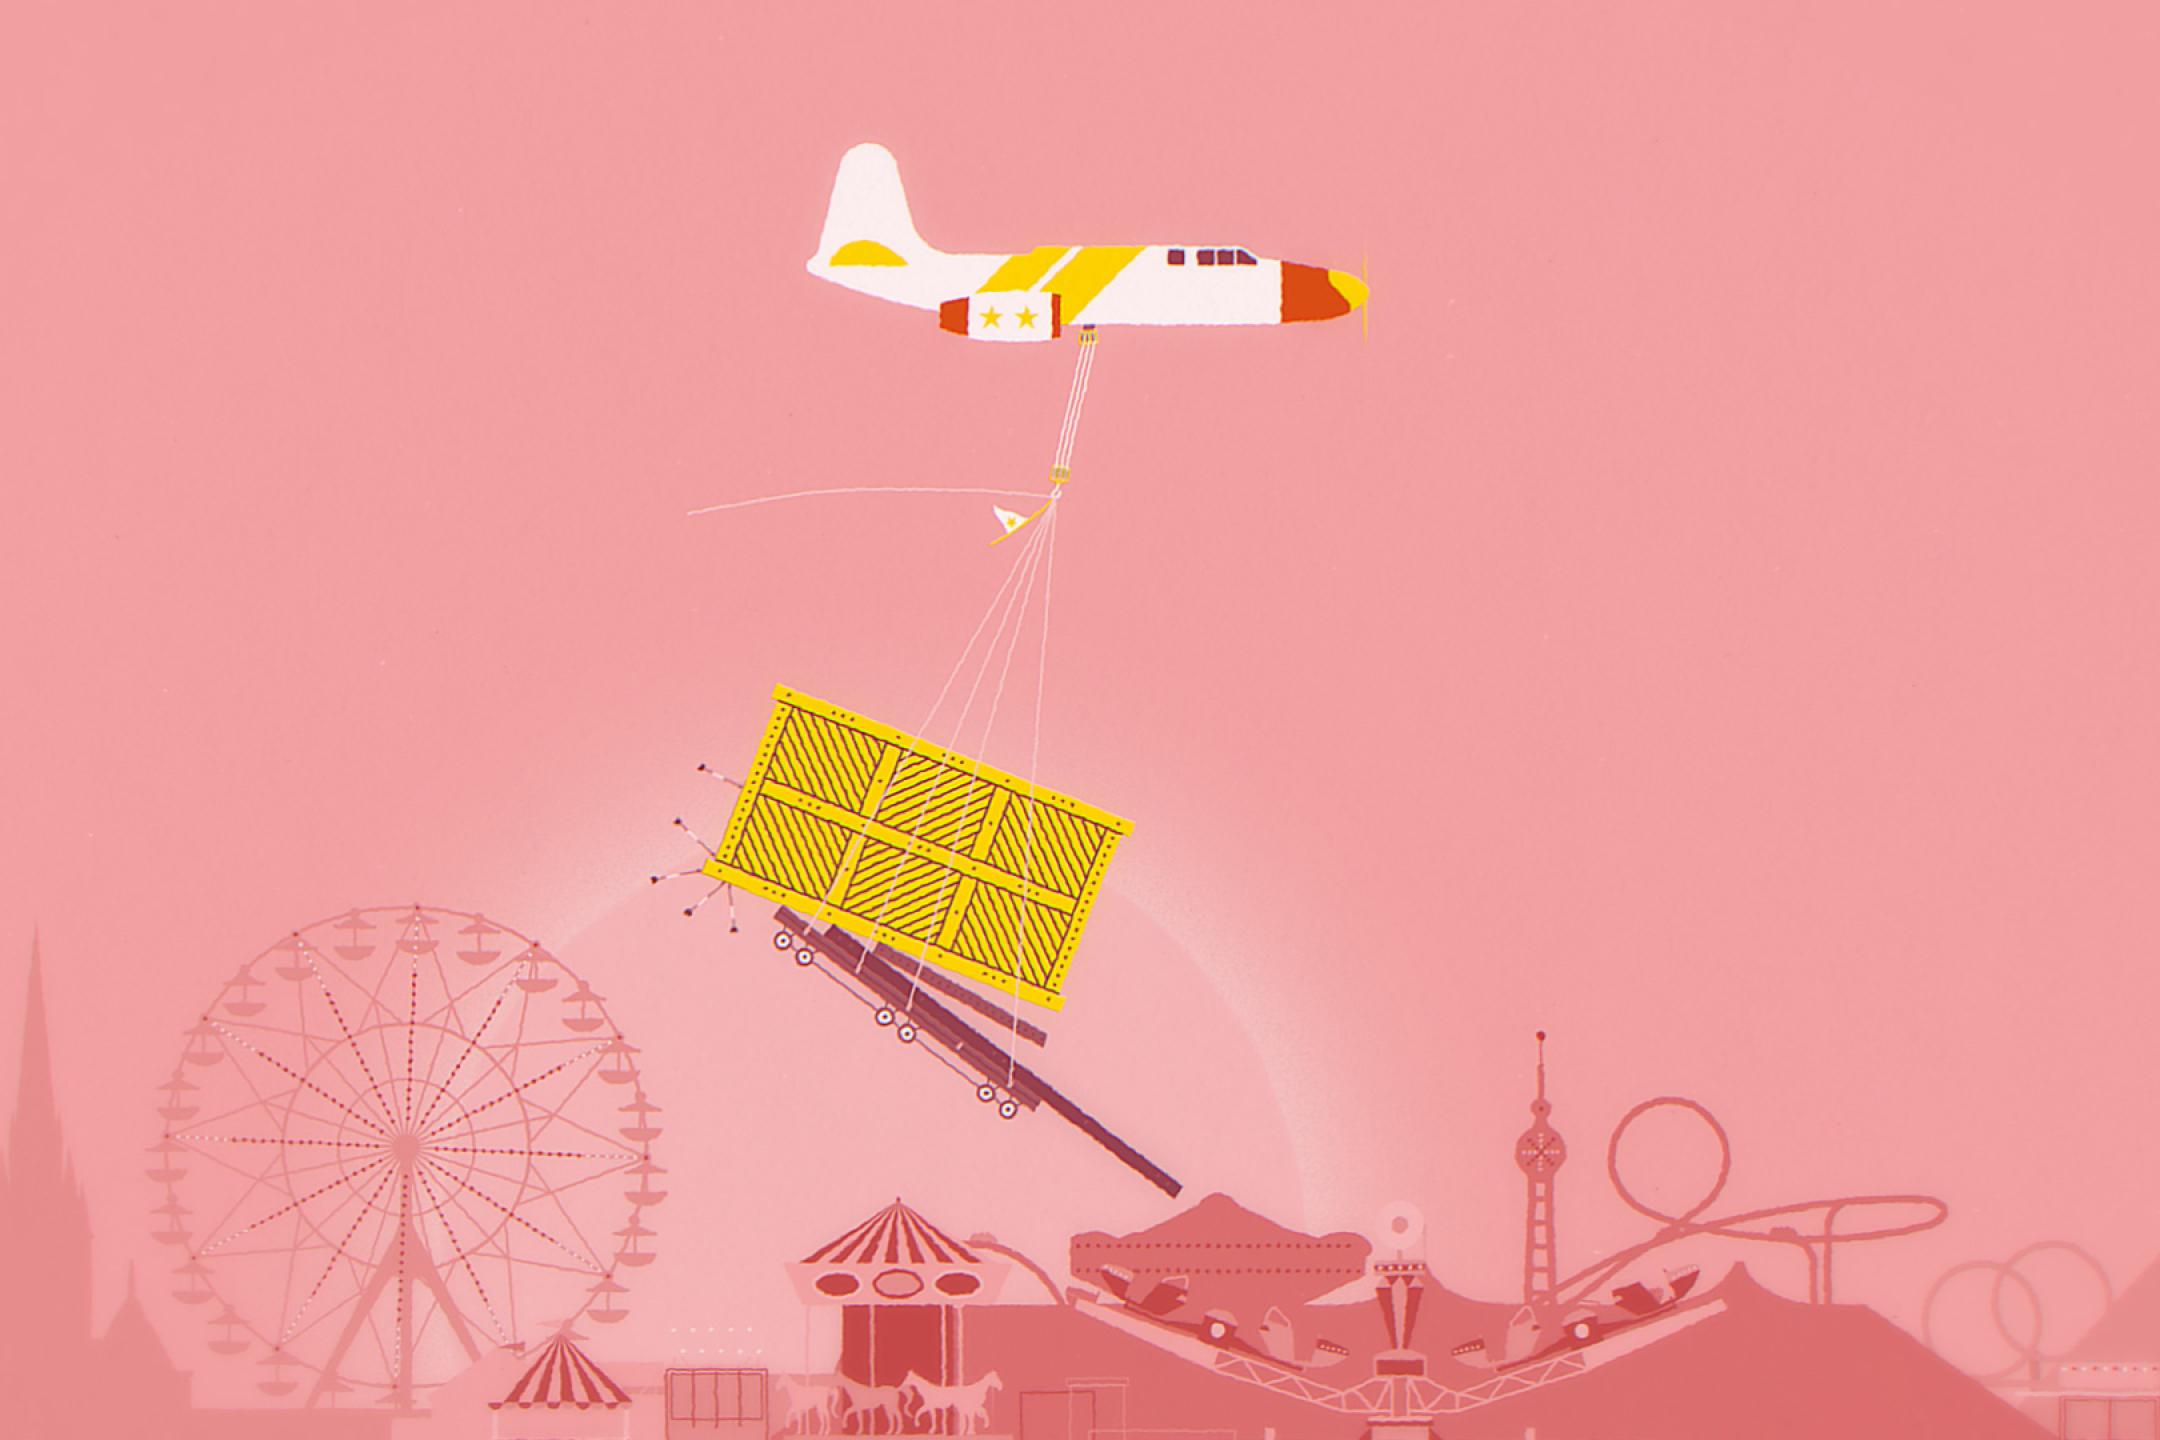 Illustration: An einem Flugzeug hängt eine riesengroße Kiste an einem Seil. Im Hintergrund die Silhouette einer Stadt.